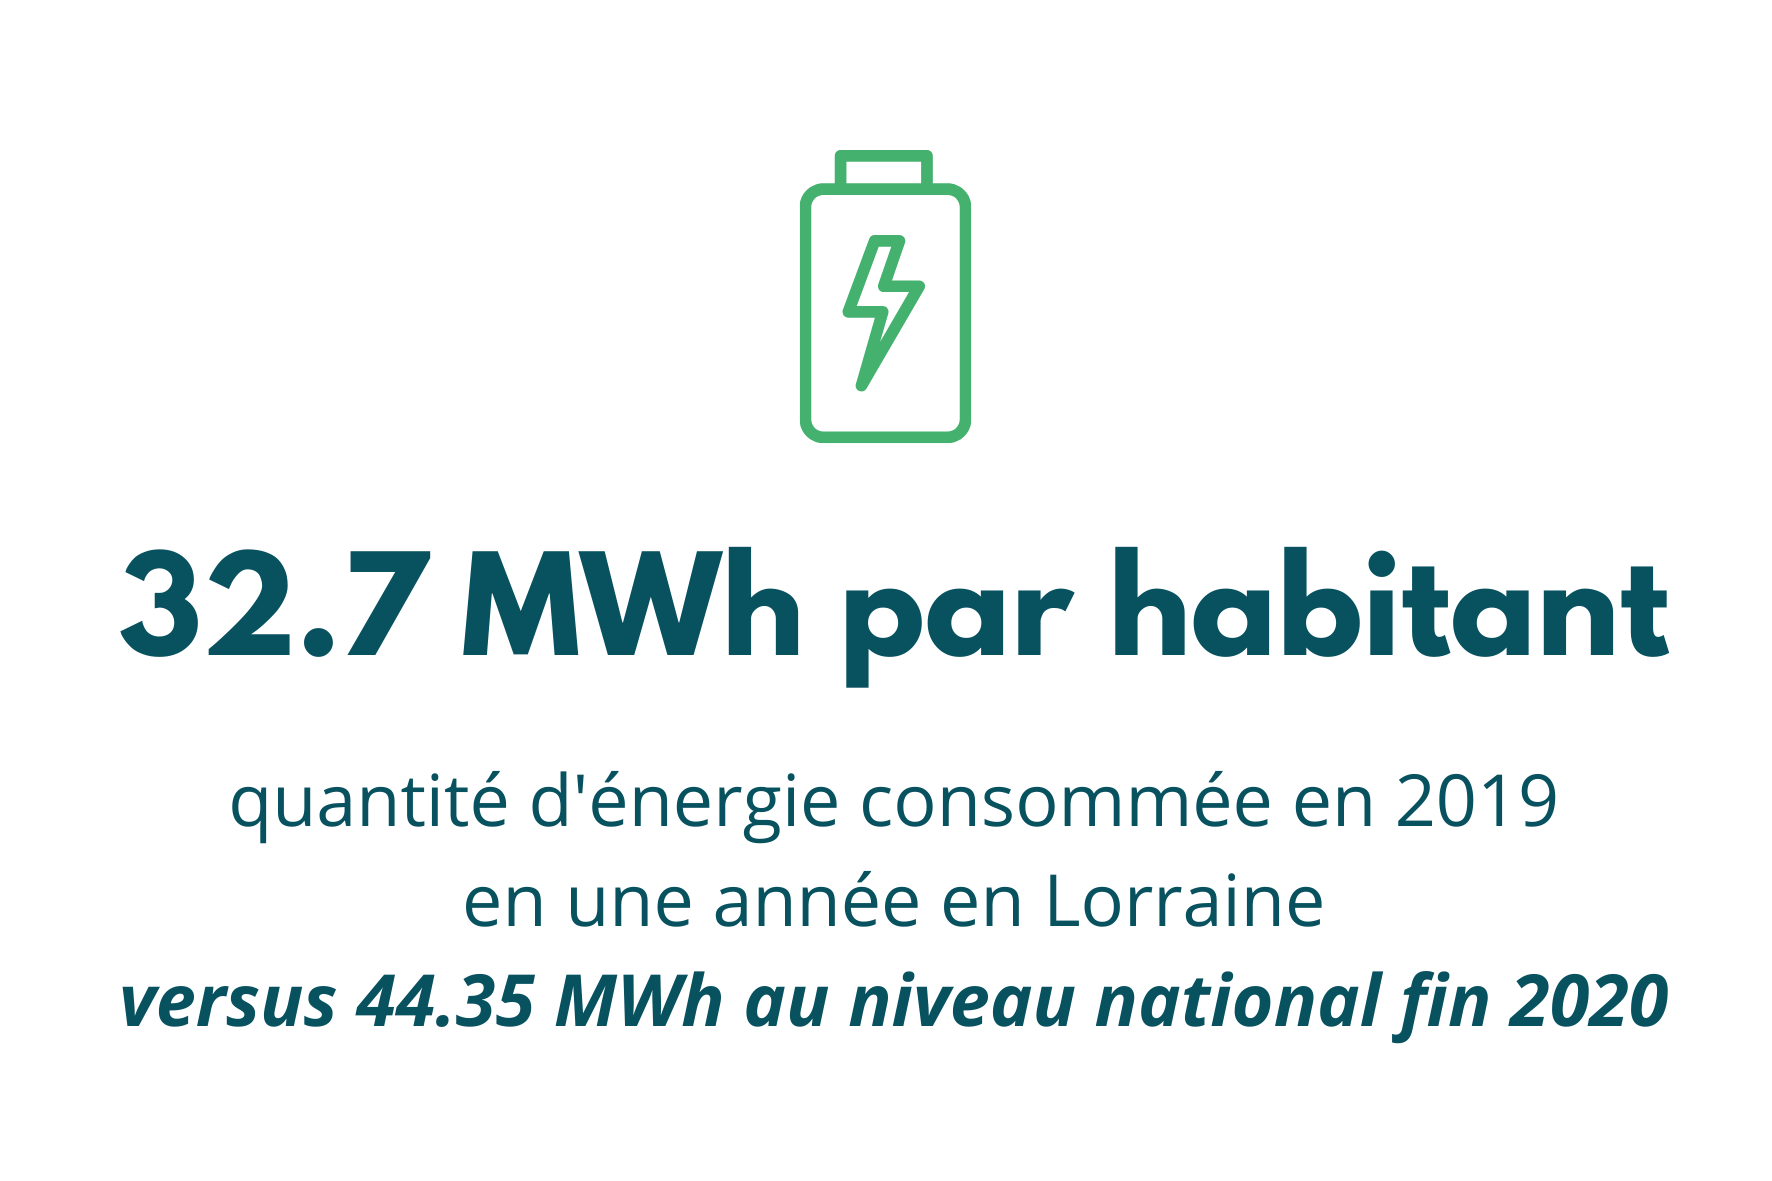 Consommation d'énergie en Lorraine en 2019